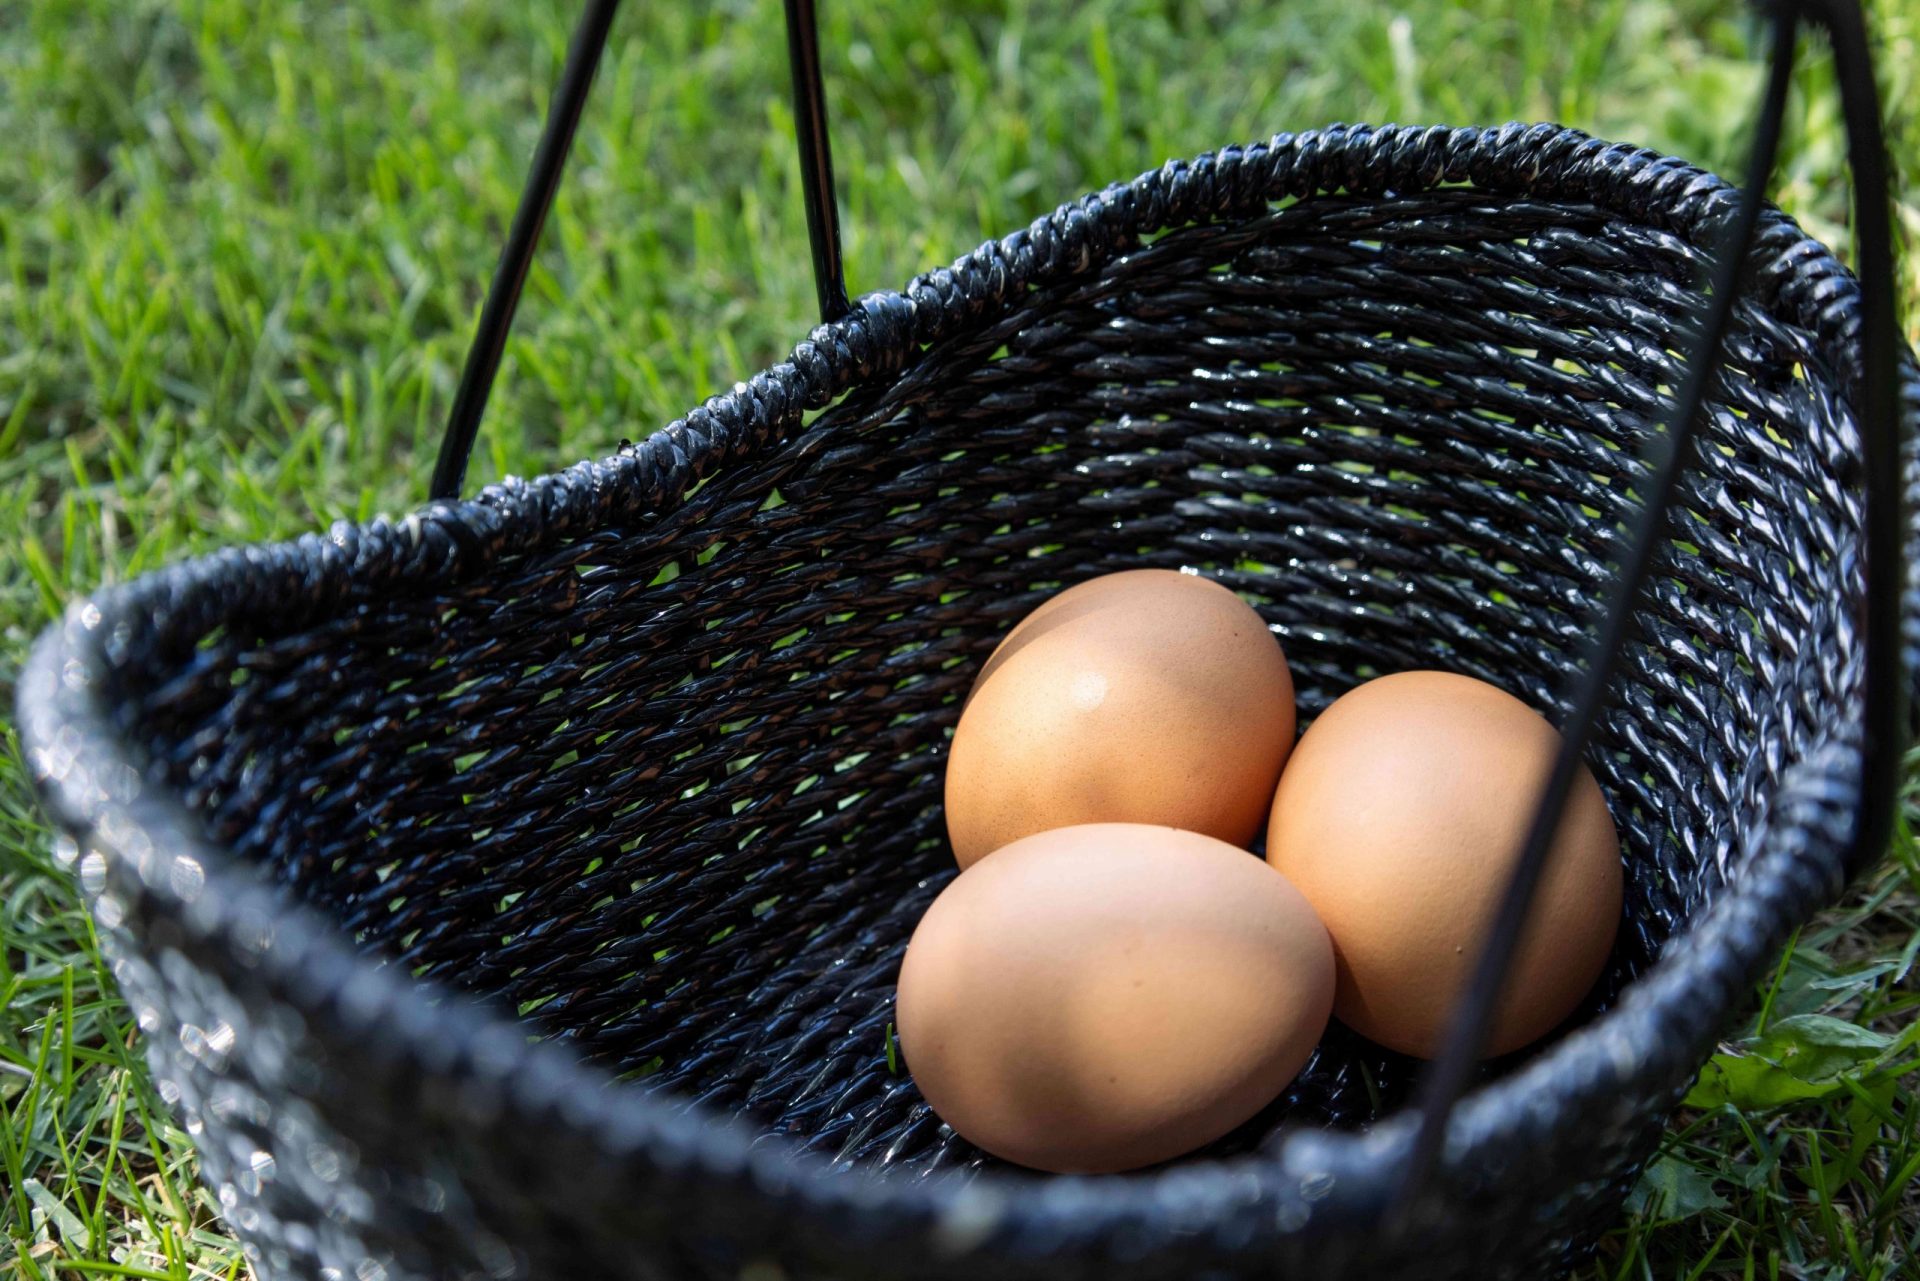 tres huevos marrones frescos de granja en una cesta de mimbre negra en la hierba